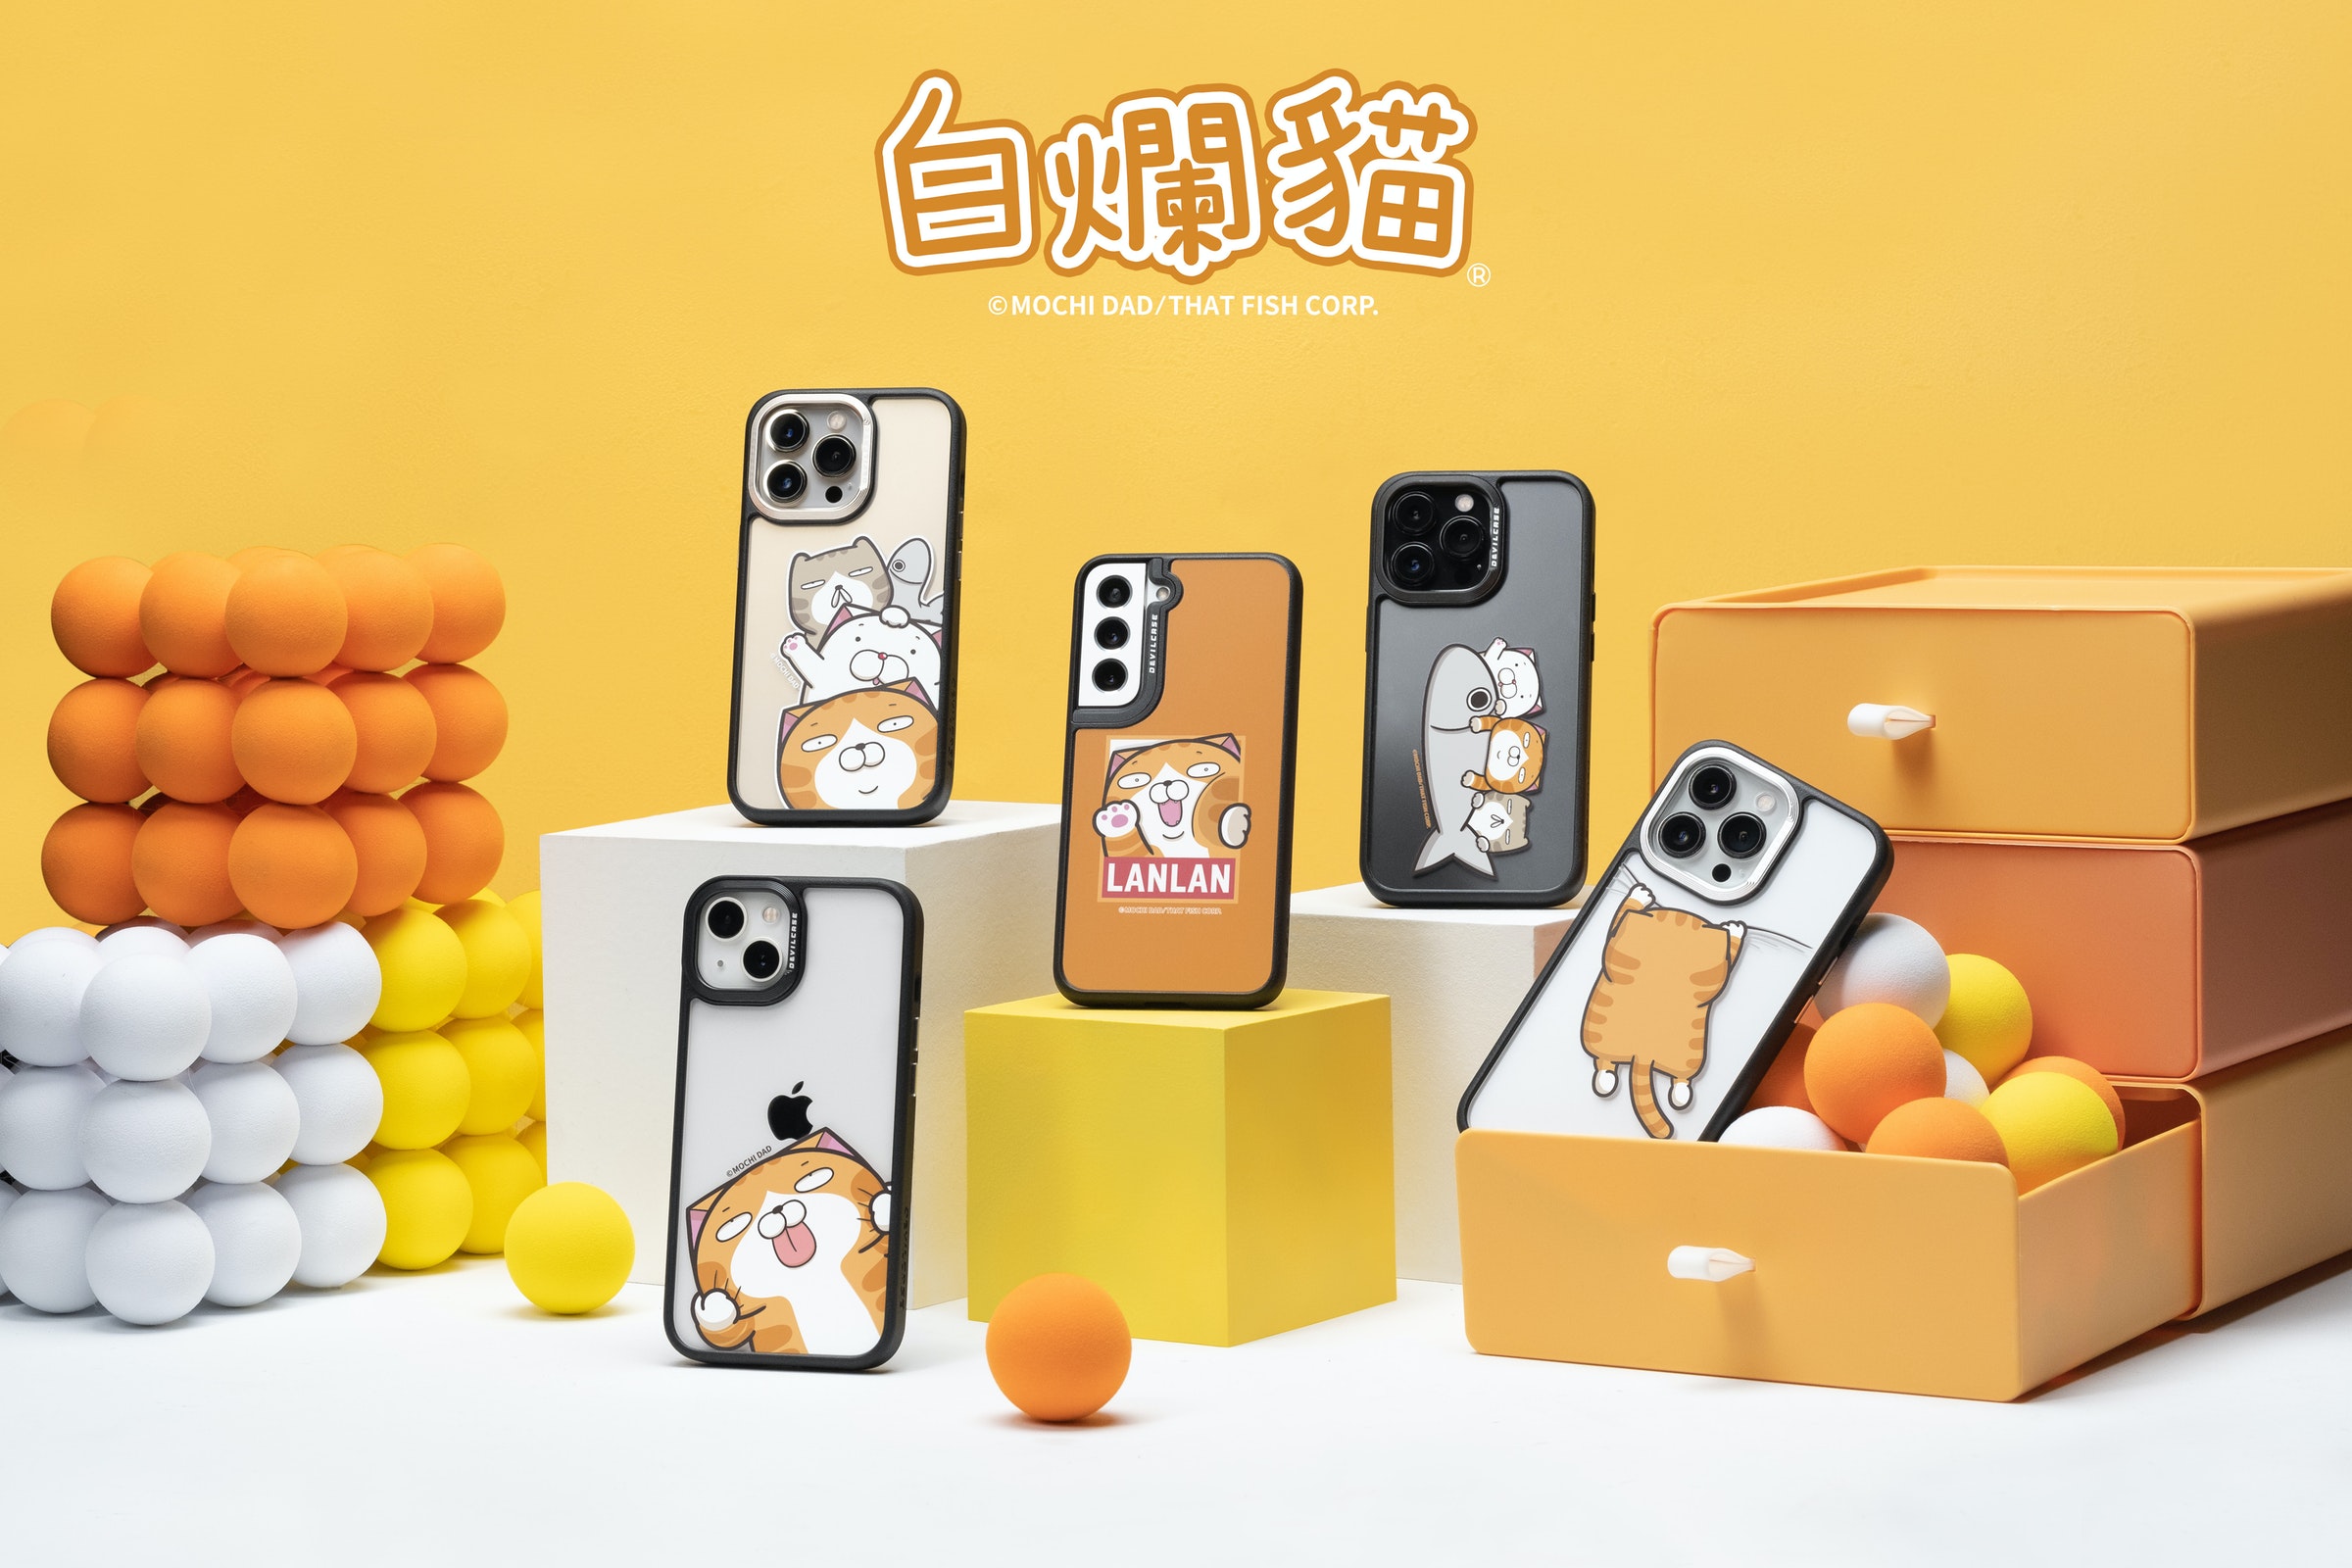 照片中提到了MOCHI DAD、OMOCHI DAD、ASUS INDO，包含了橙子、白爛貓、產品設計、產品、貼圖